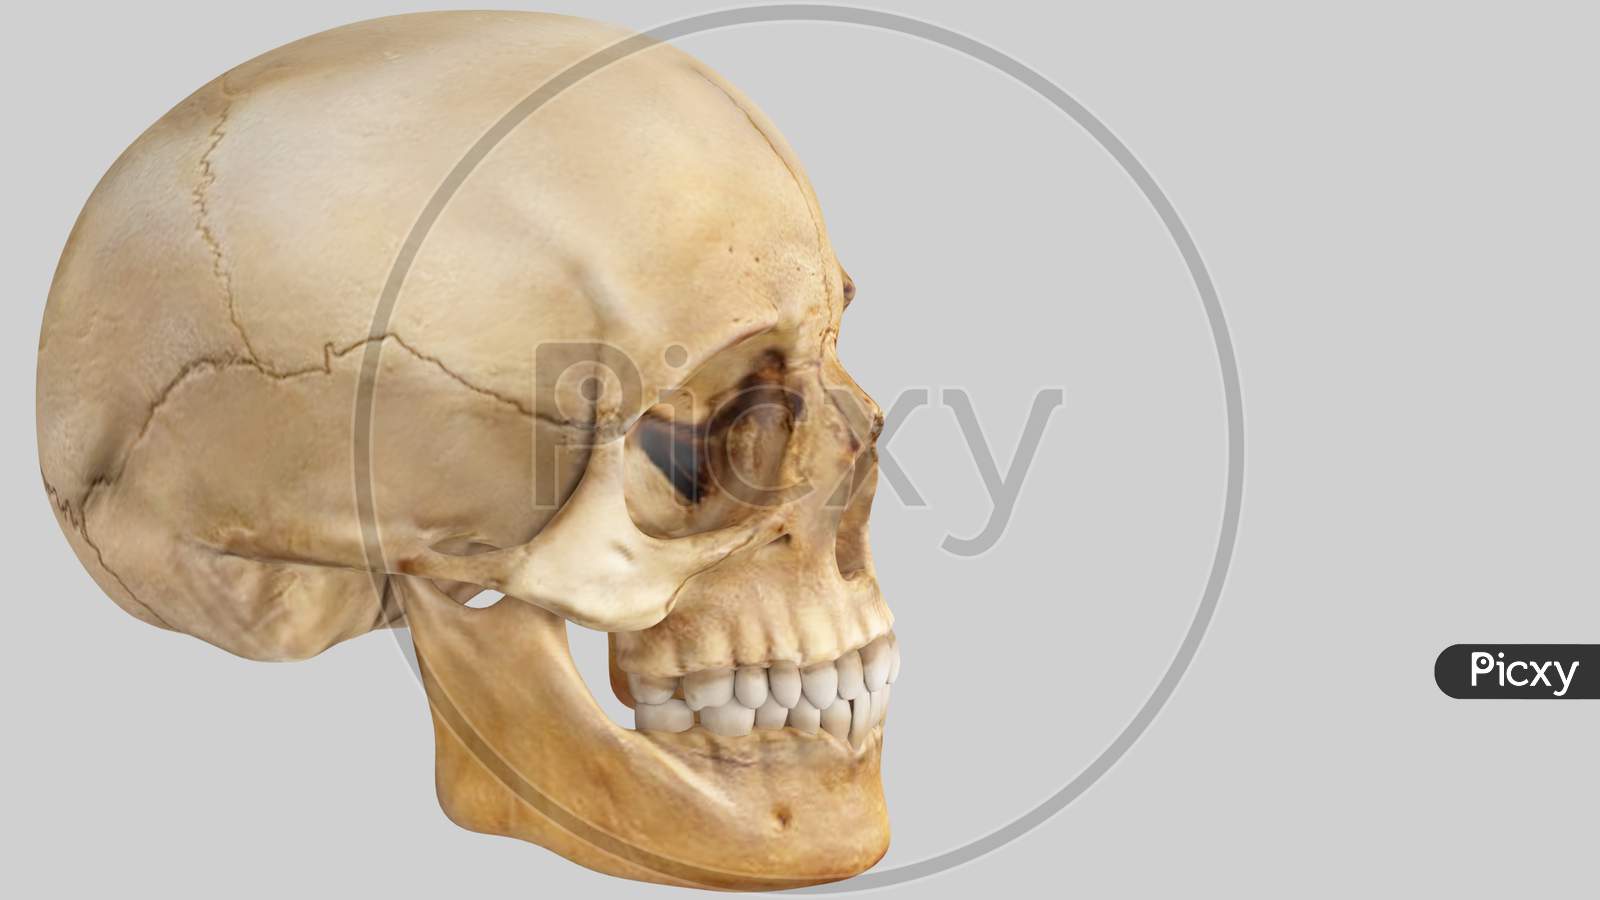 Artificial Human Skull On White Background, Skull